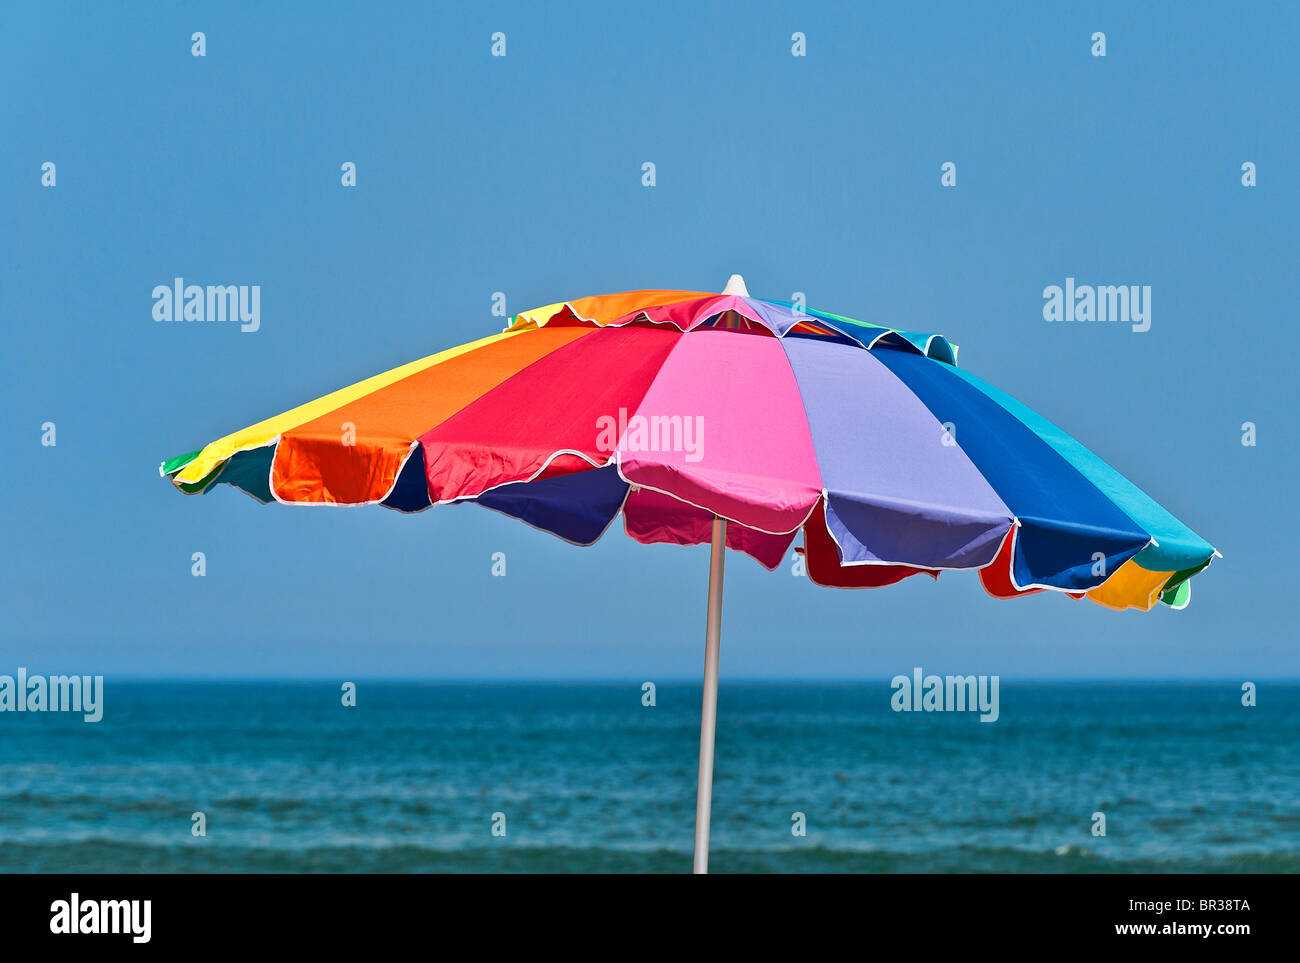 Bunten Sonnenschirm. Stockfoto